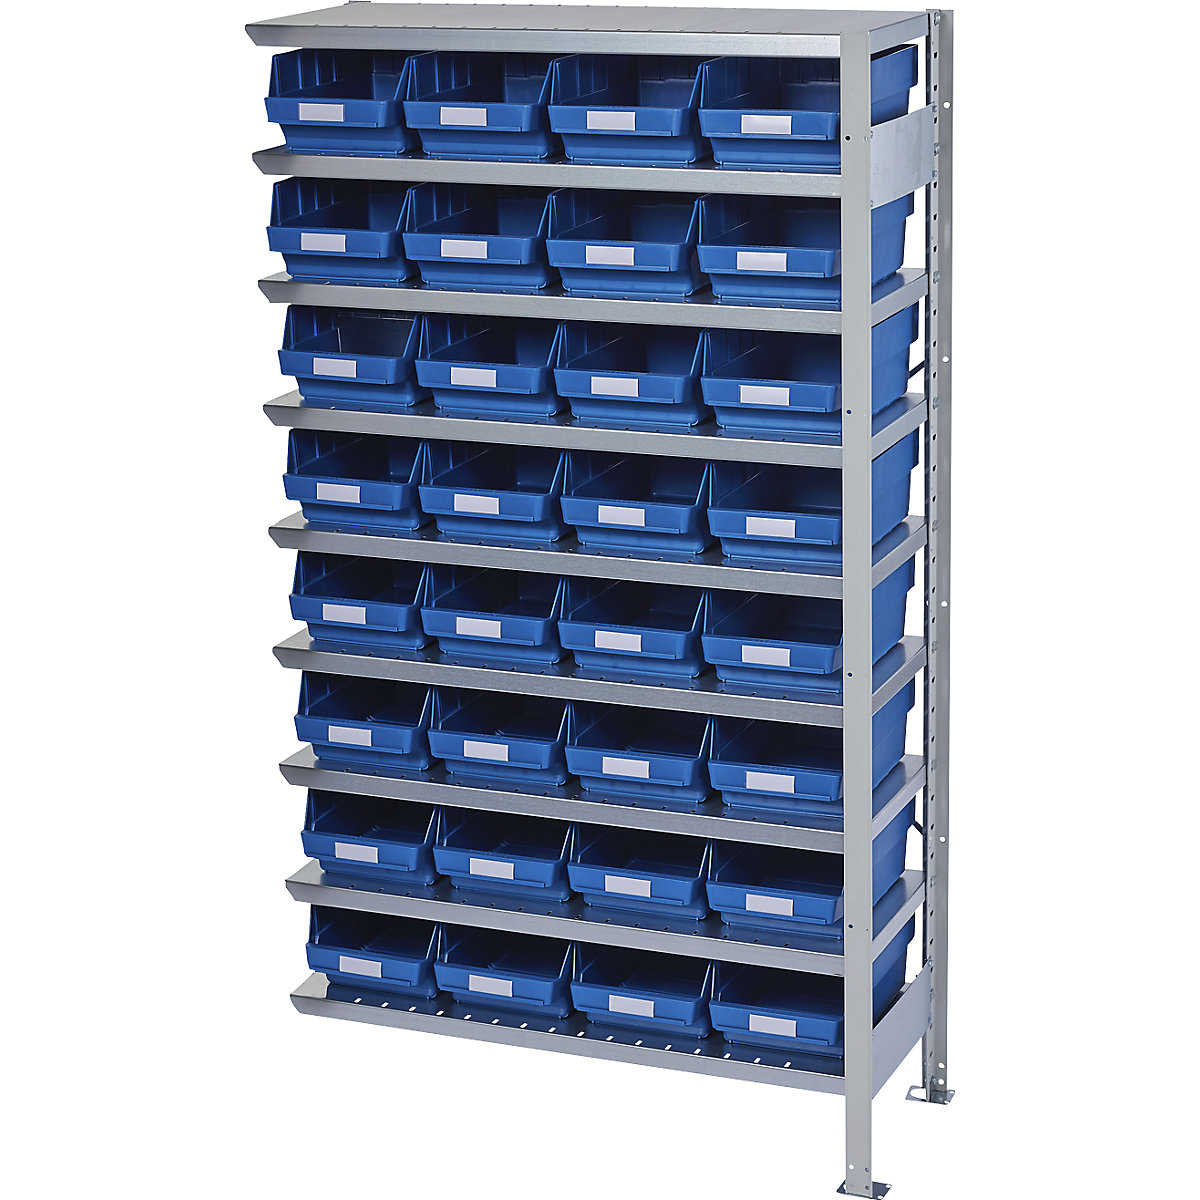 Összedugaszolós állvány dobozokkal – STEMO, állványmagasság 1790 mm, bővítő állvány, 400 mm mély, 32 kék doboz-23